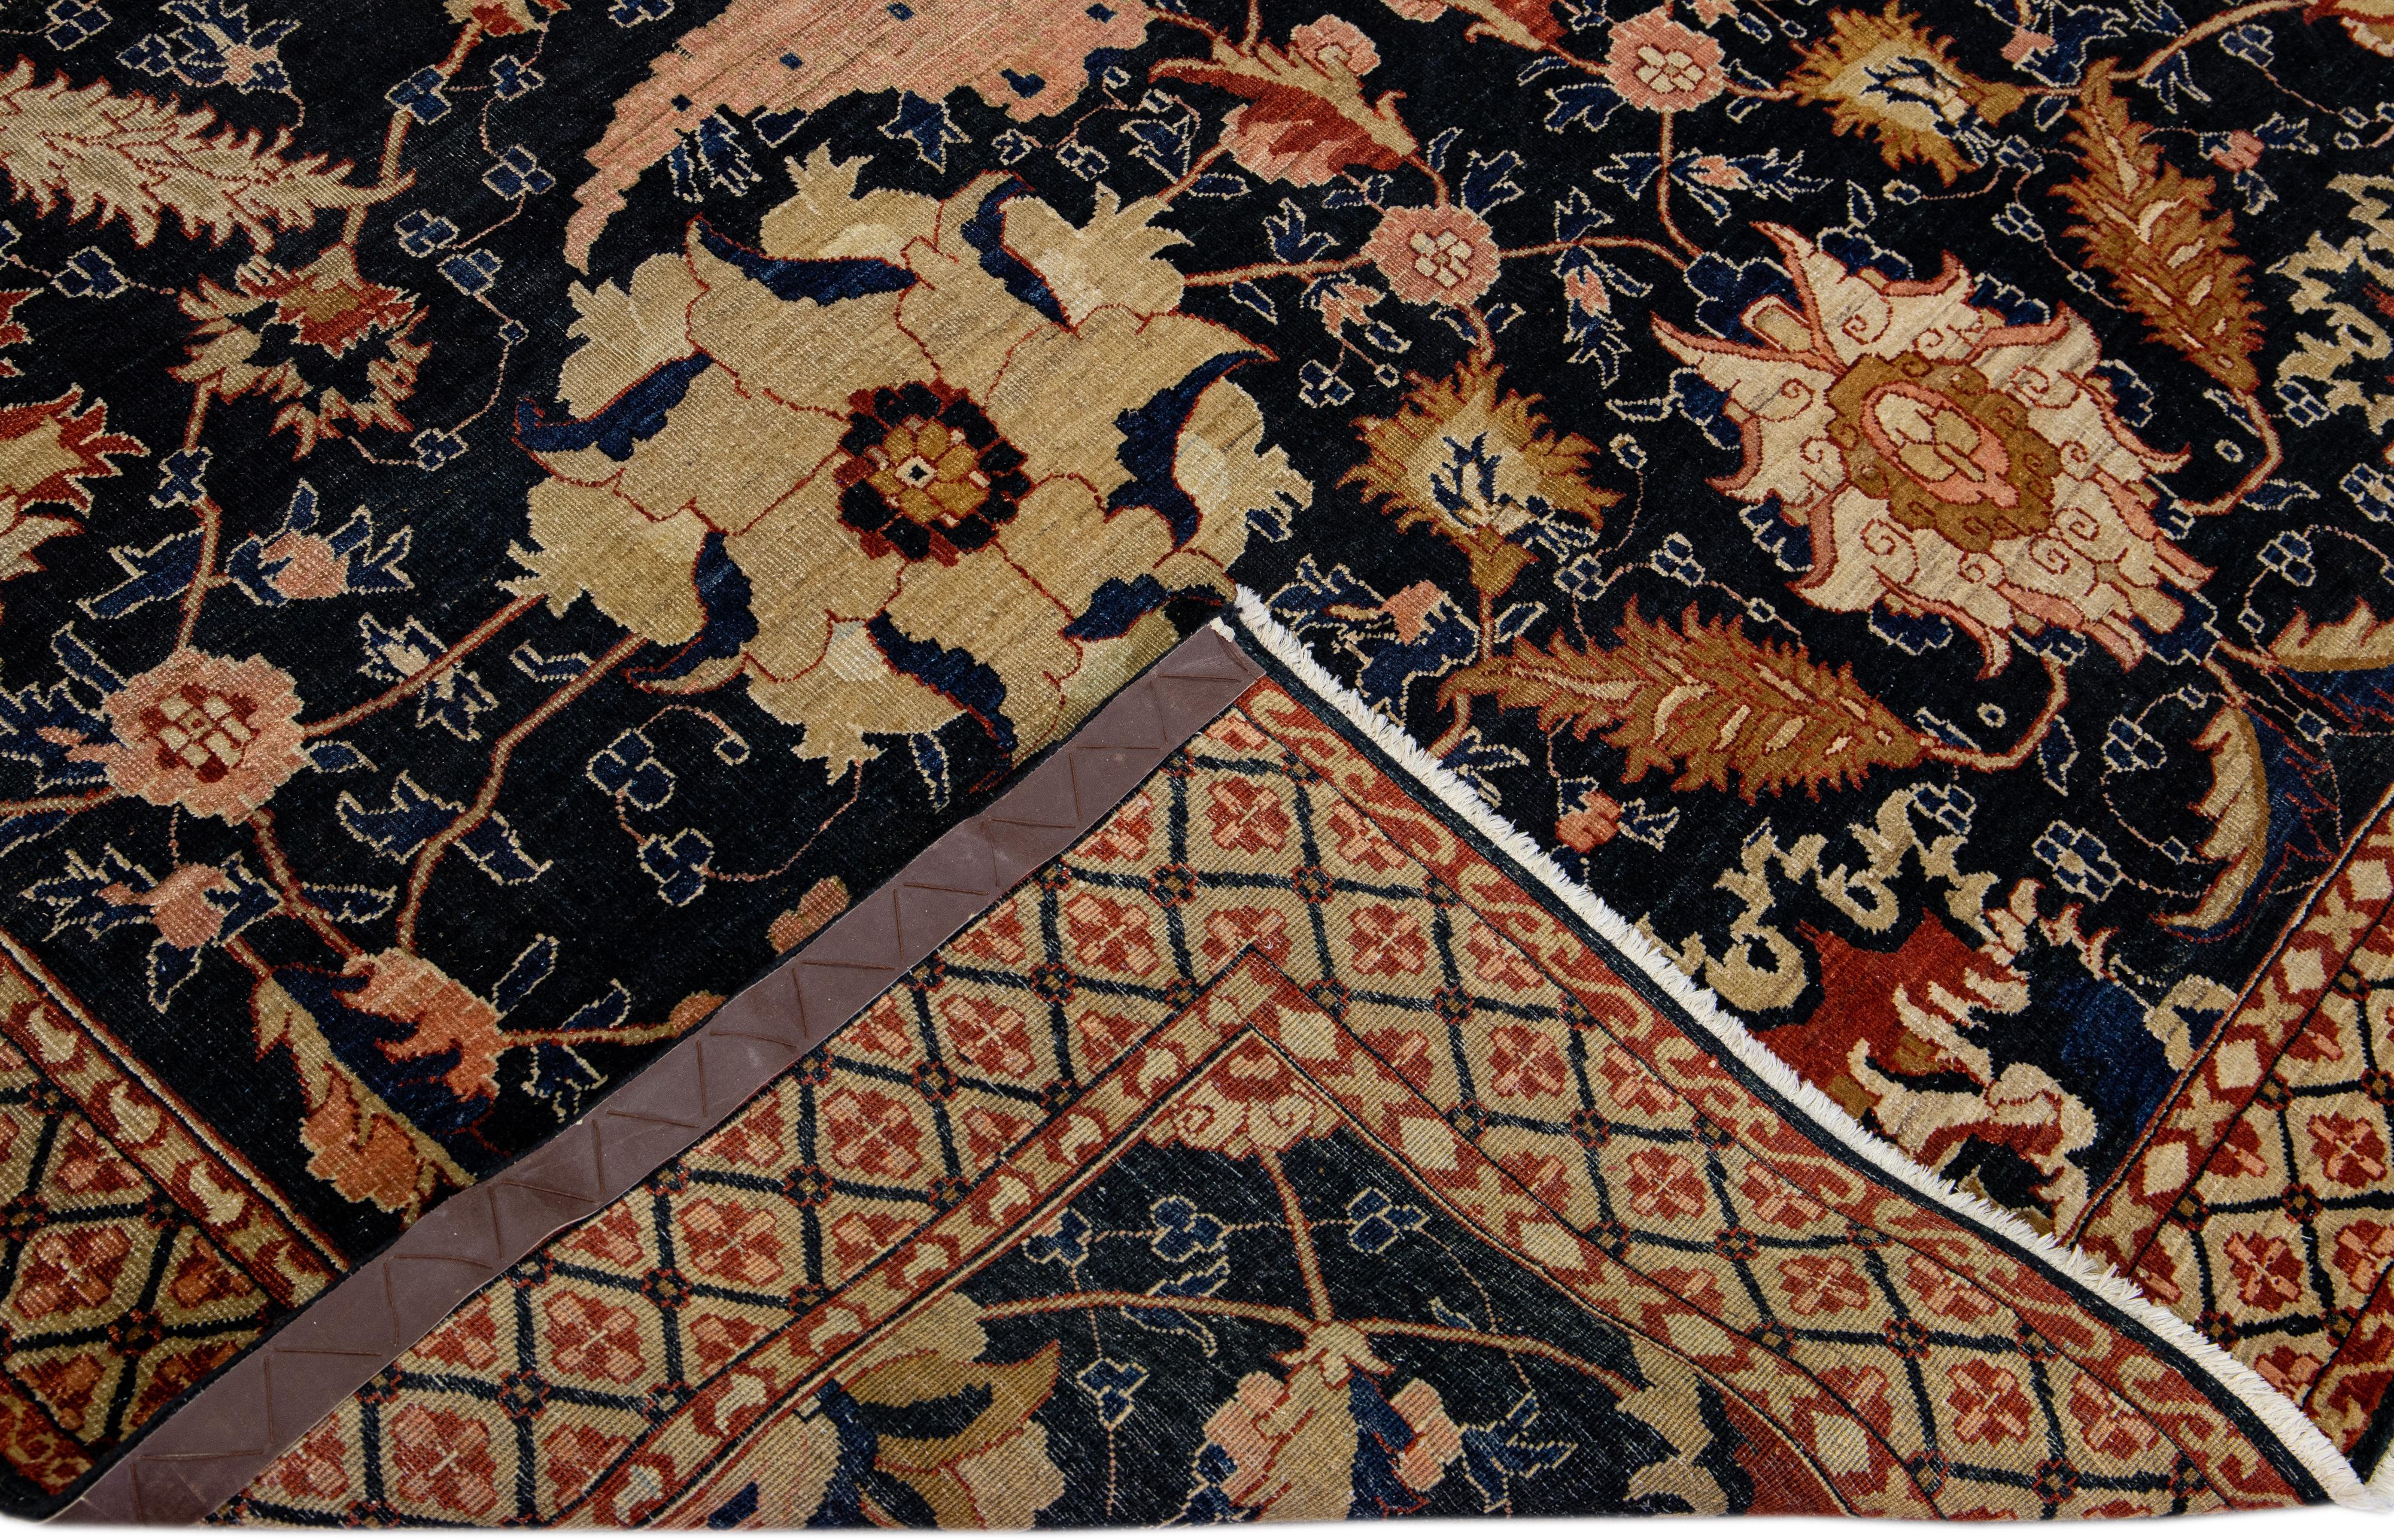 Magnifique tapis antique Agra en laine nouée à la main avec un cadre aux motifs géométriques sur un champ bleu foncé. Ce tapis indien présente des accents de brun, de pêche et de rouille dans toute la pièce.

Ce tapis mesure : 7' x 10'.